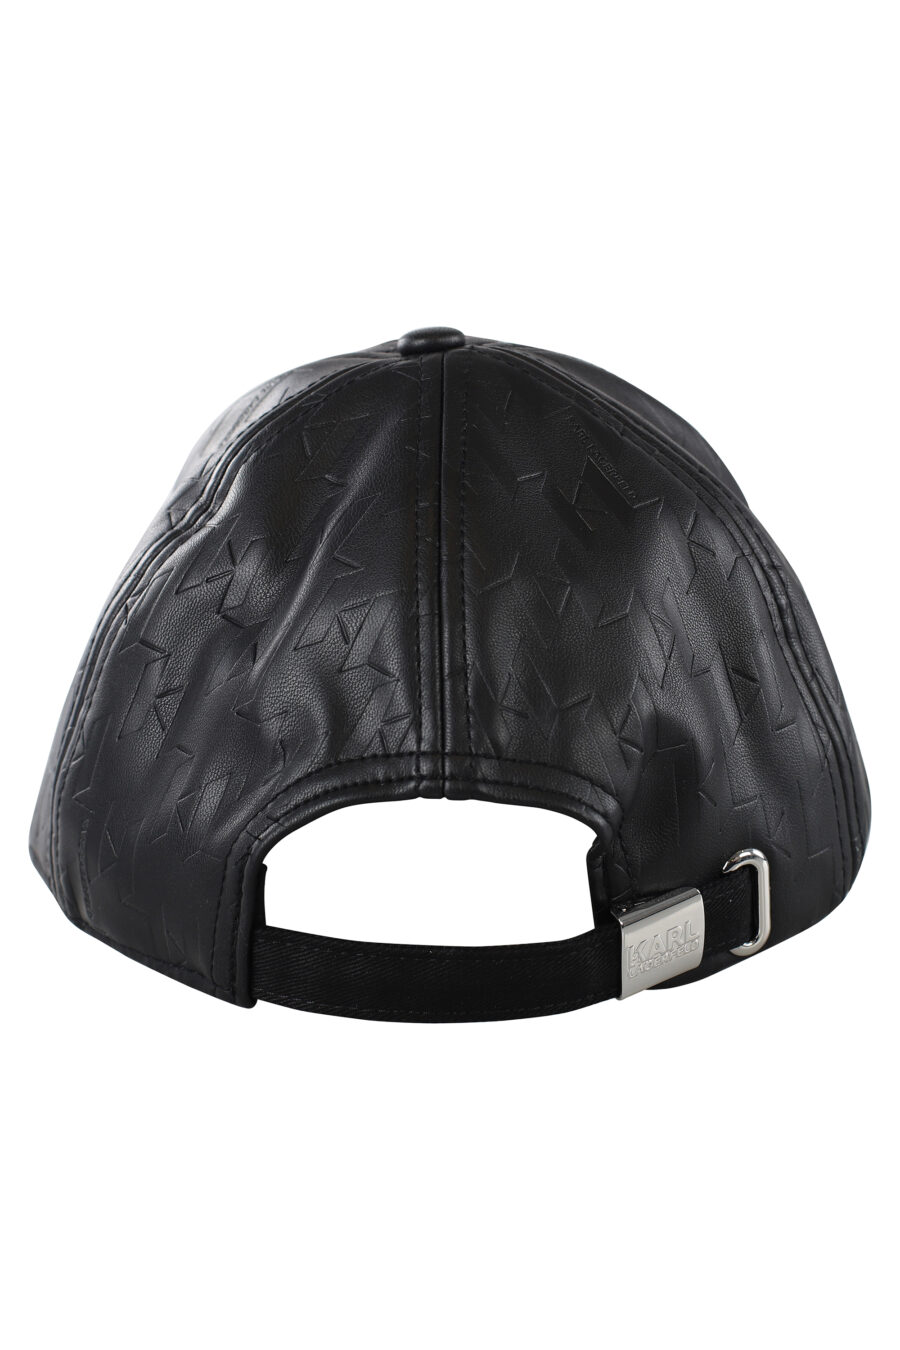 Gorra negra de cuero con logo monocromático - IMG 7066